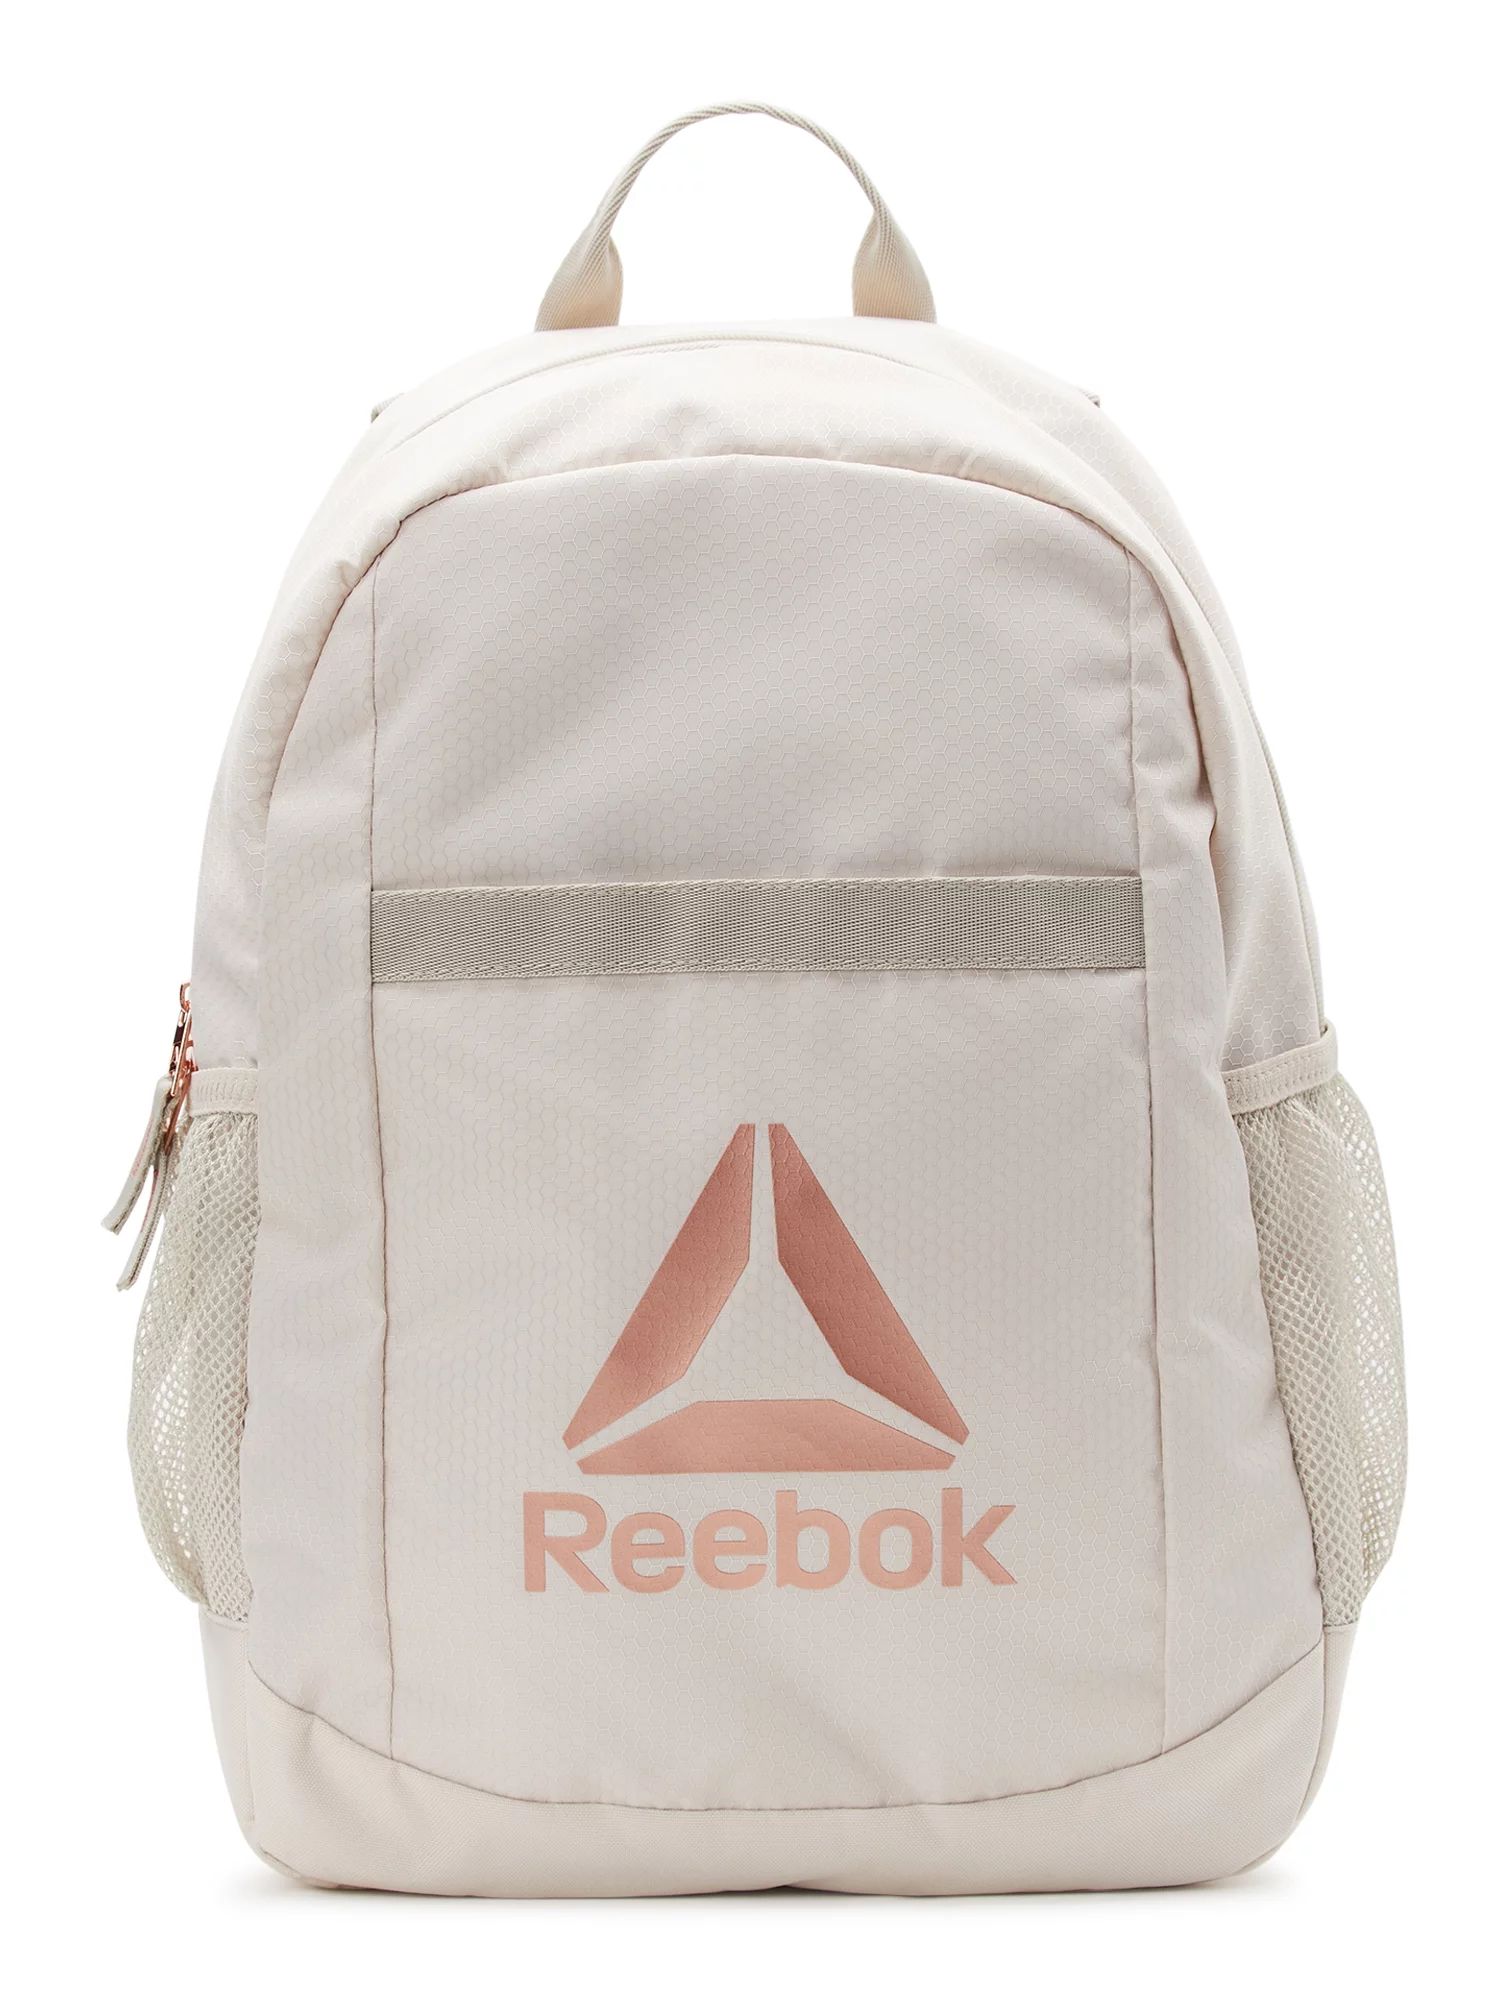 Reebok Women’s Adult Den Laptop Backpack, Pumice Stone | Walmart (US)